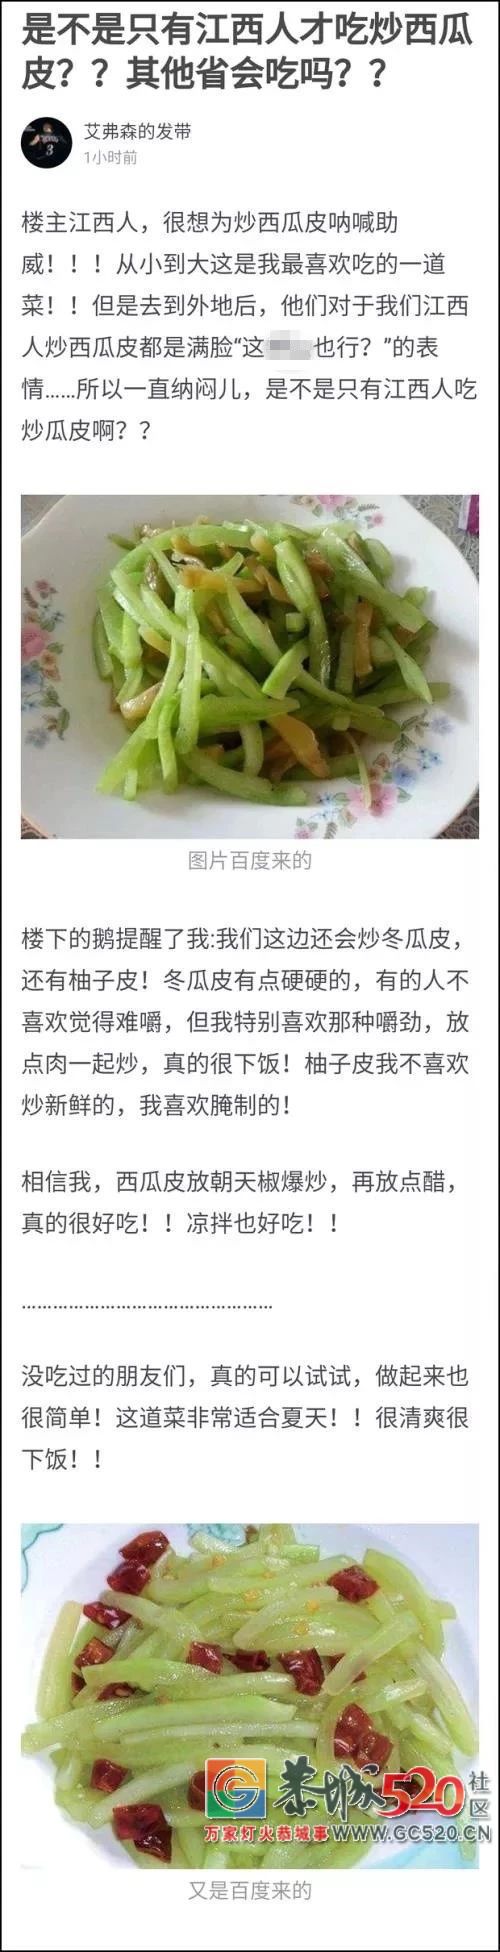 炒西瓜皮竟然是一道菜，还很好吃？吃瓜我们是专业的……722 / 作者:何明明 / 帖子ID:261780